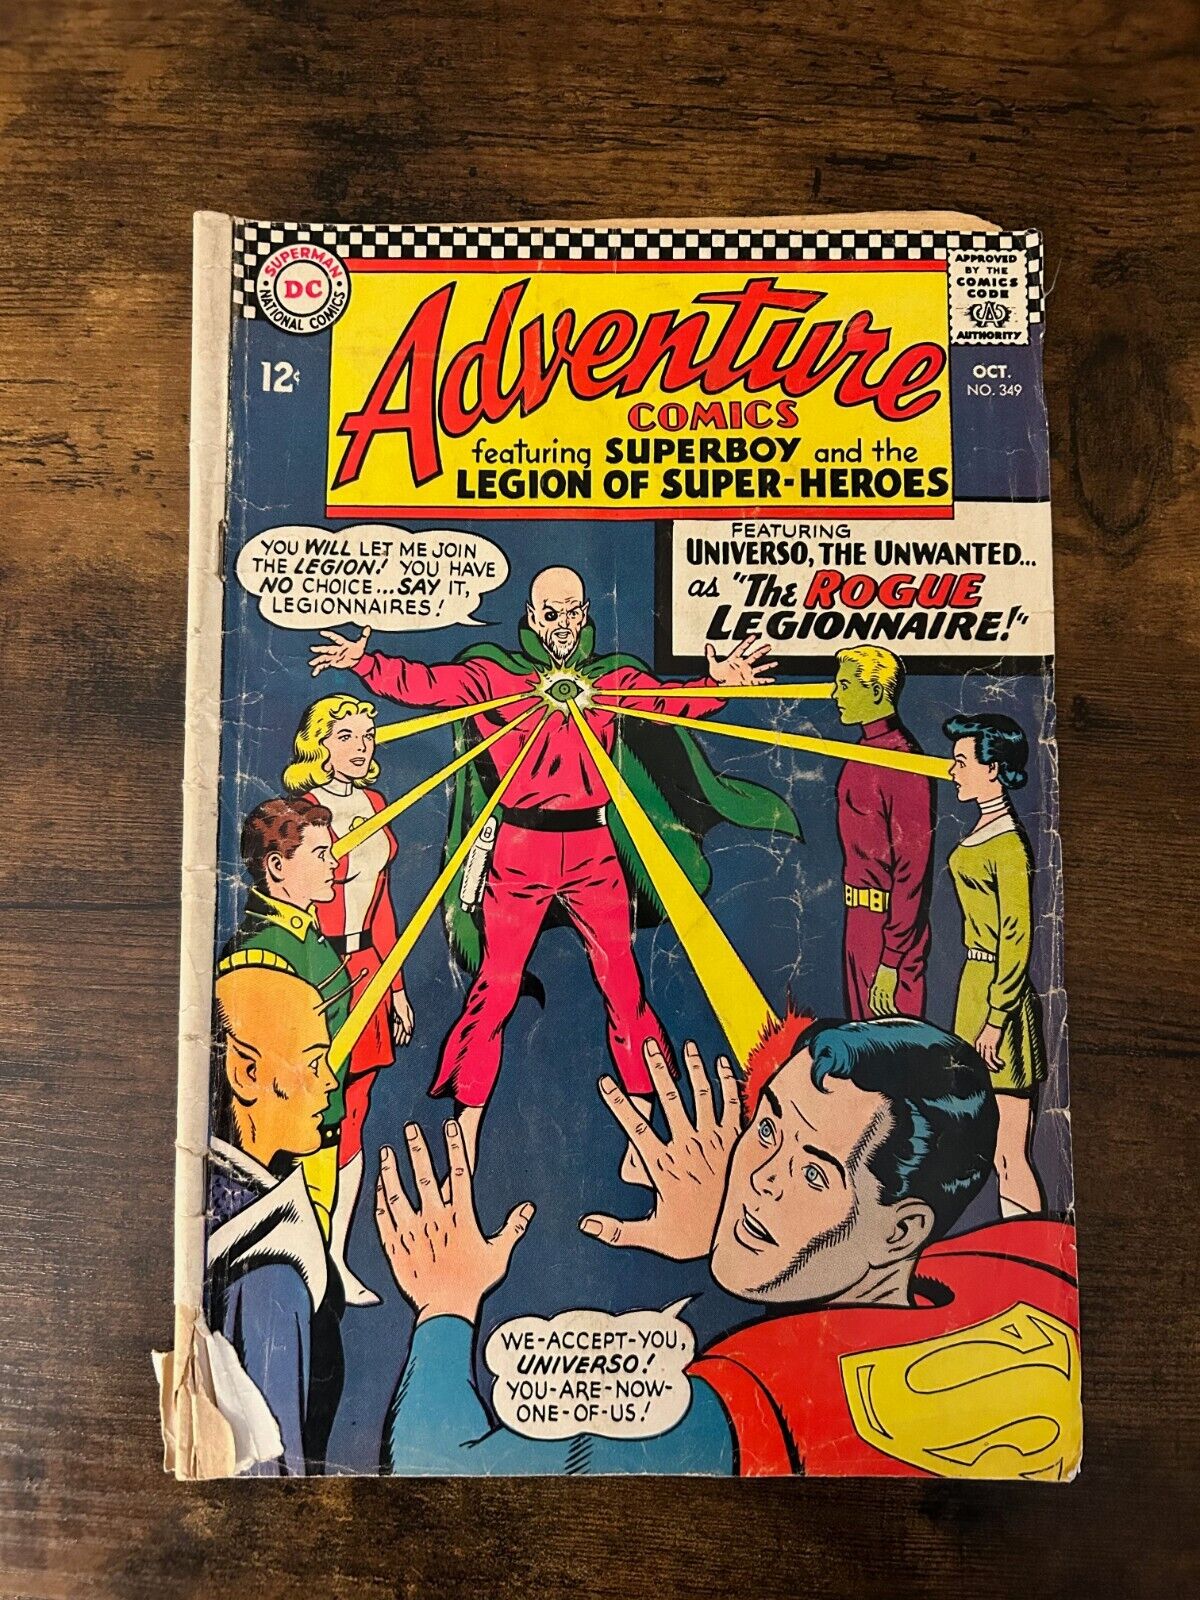 Adventure Comics #349 DC Comics (Oct, 1966) LOW GRADE 1st Universo Rond Vidar